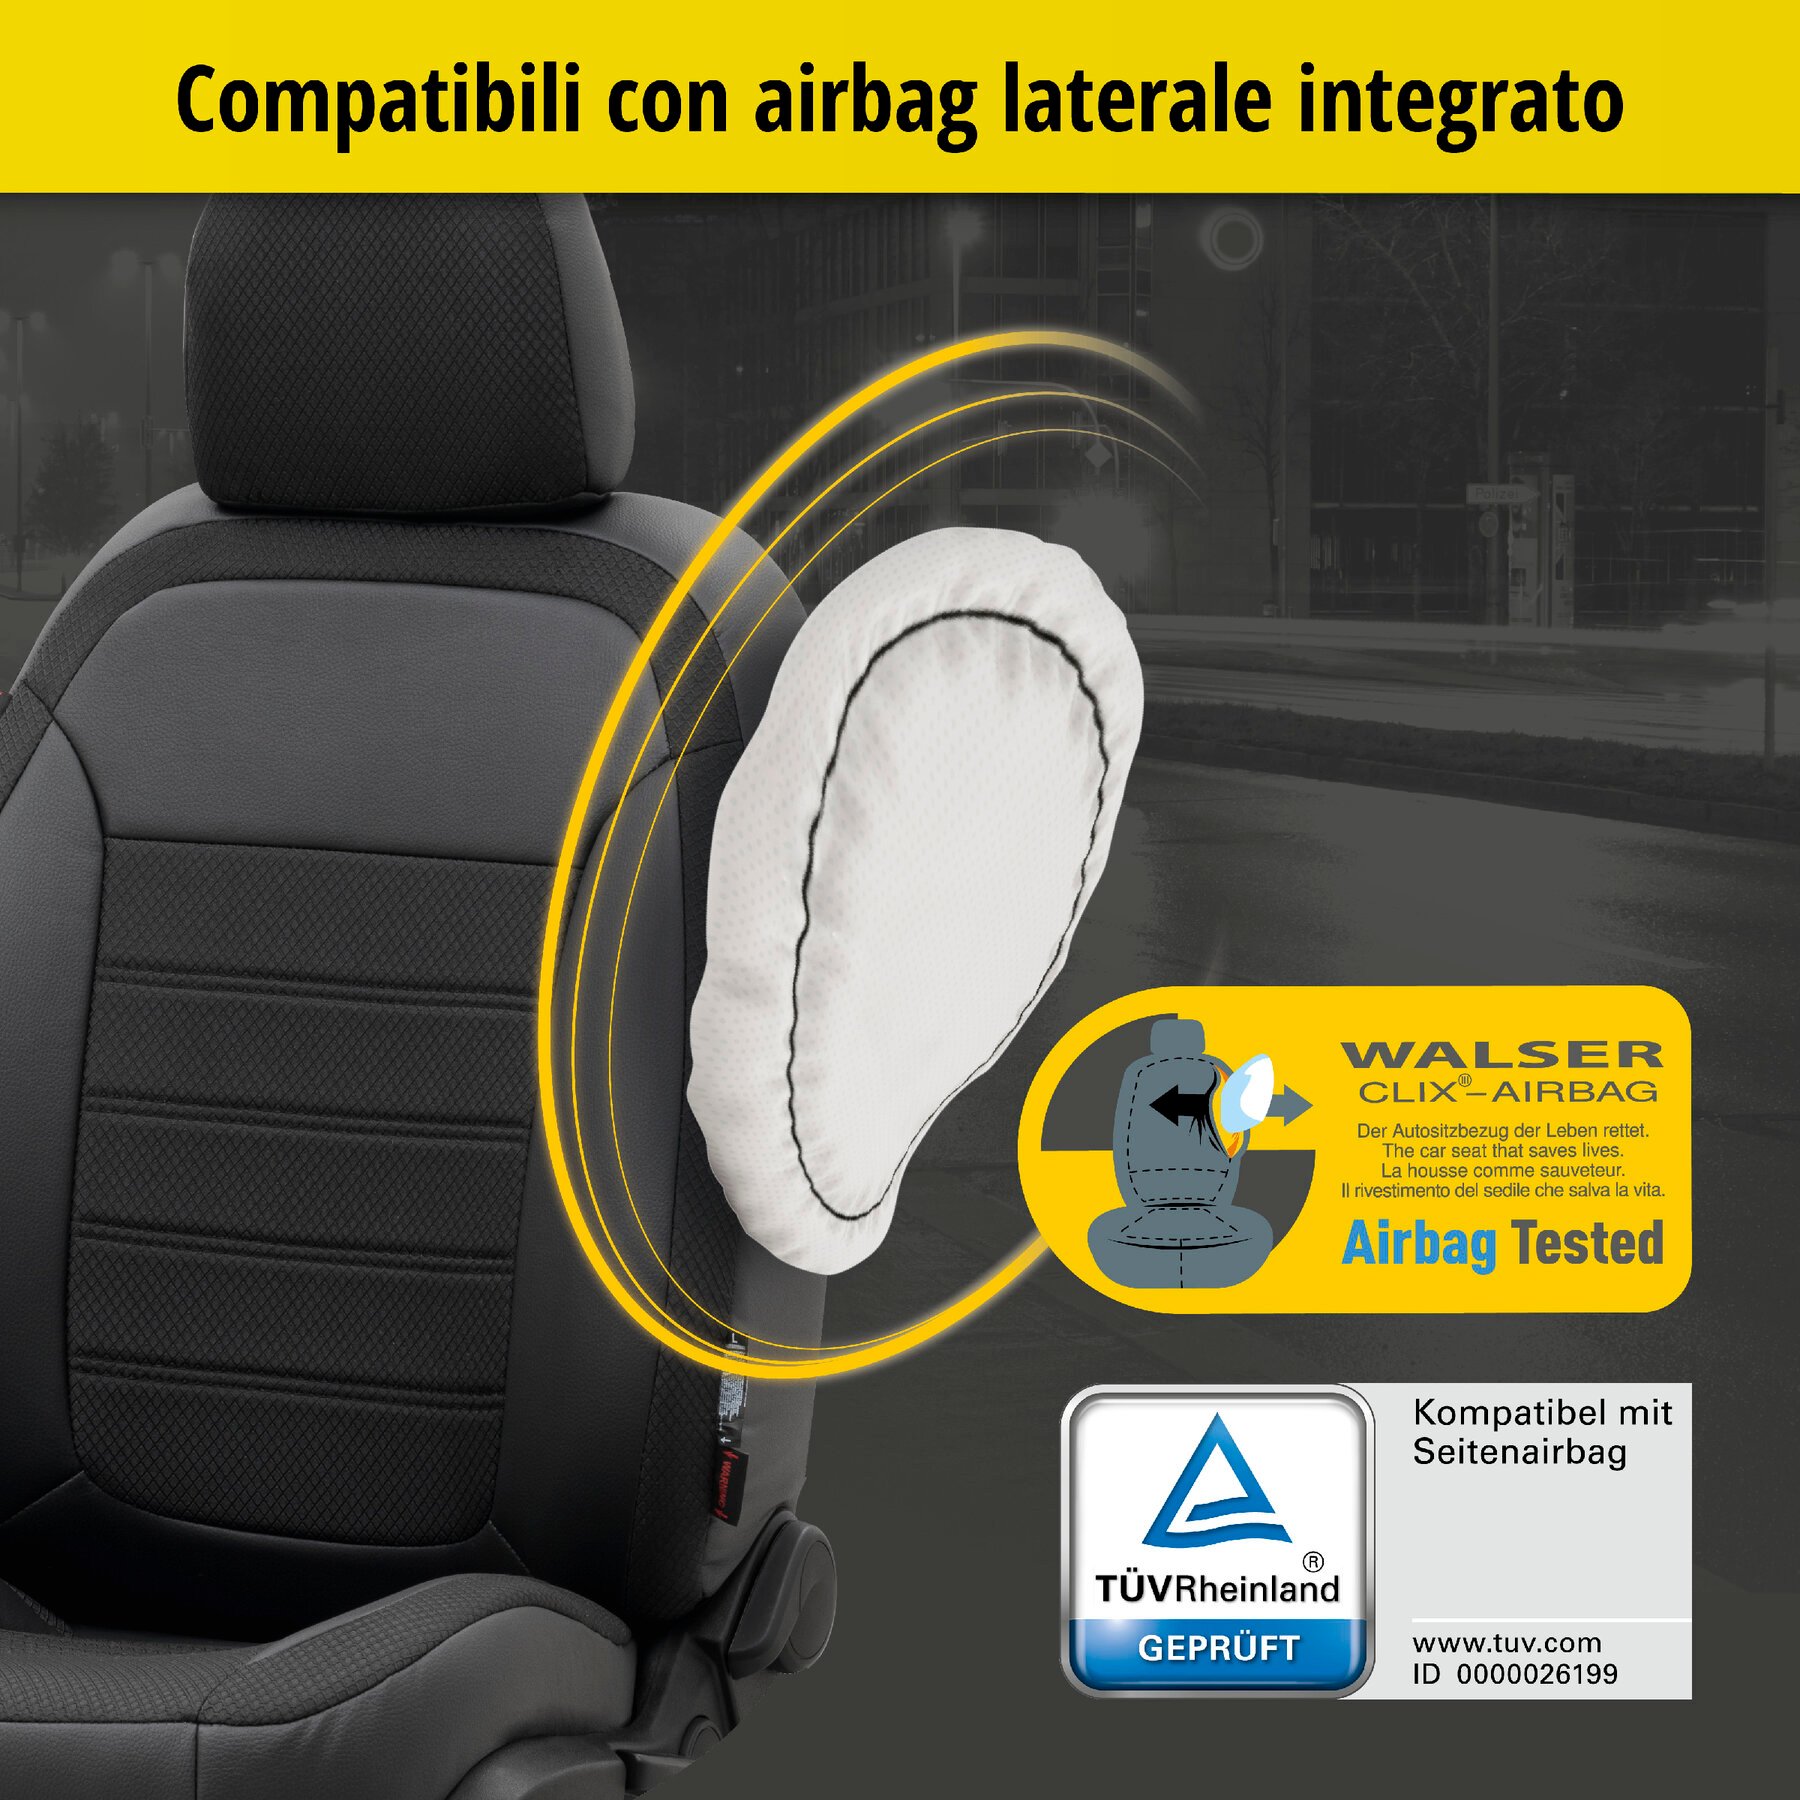 Coprisedili Aversa per Seat Leon (1P1) 05/2005-12/2013, 2 coprisedili singoli per sedili normali